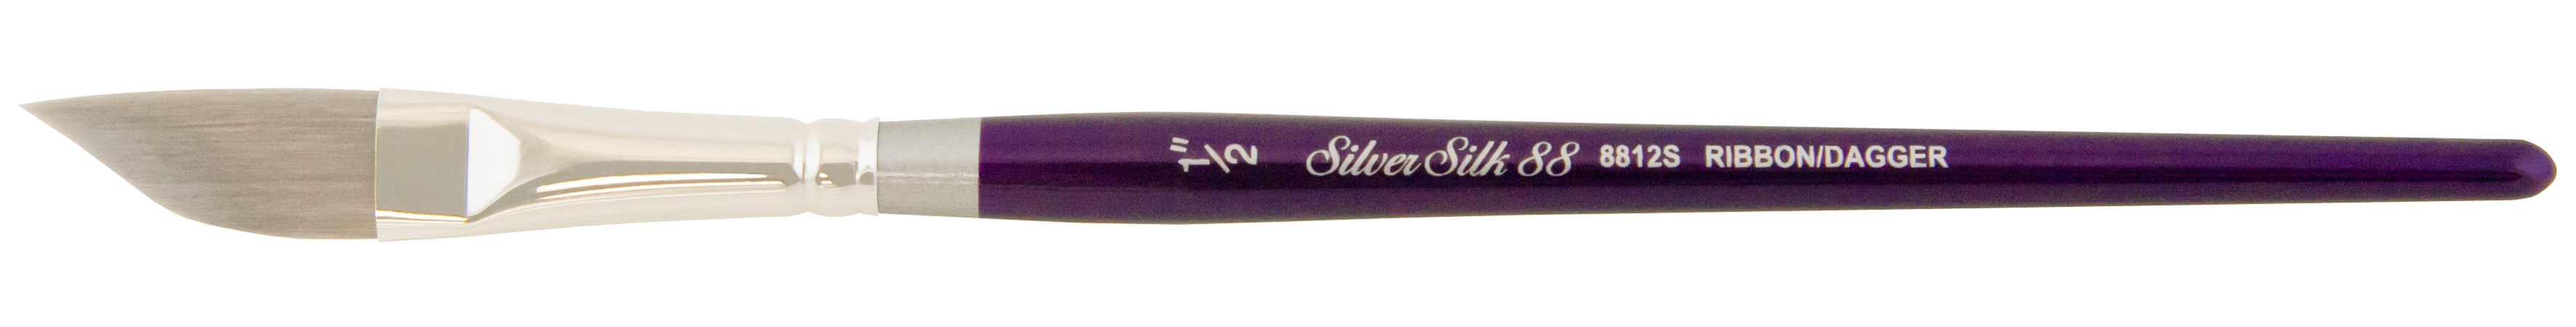 Silver Brush Silver Silk 88 SH 8812S Ribbon/Dagger